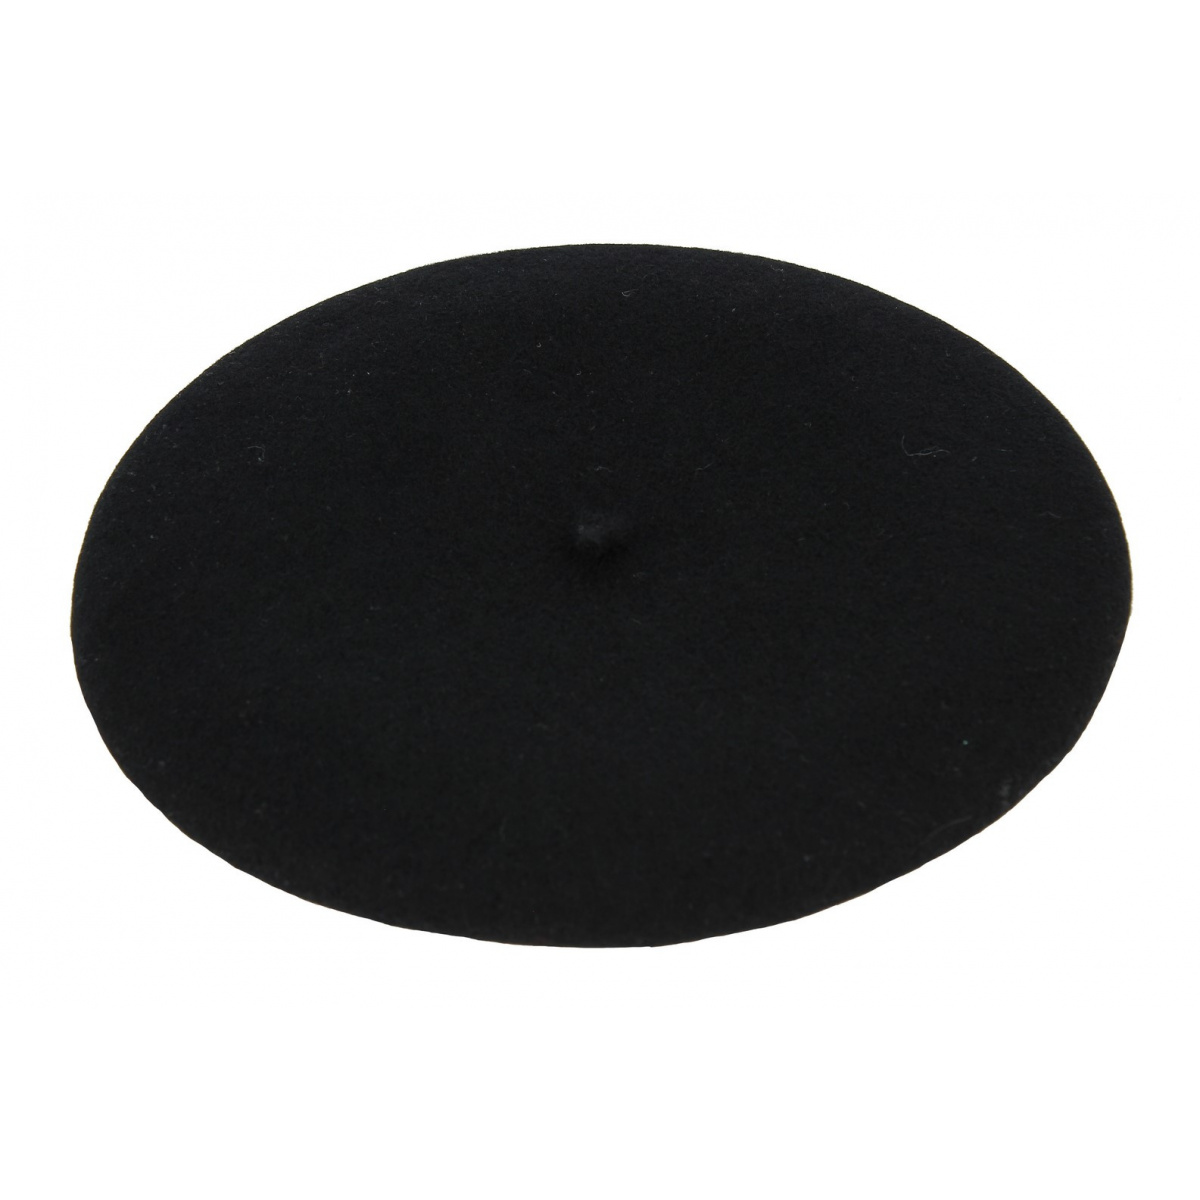 Beret ELO noir pure laine de marque L'AIGLON imperméable tour de tête 55 cm 